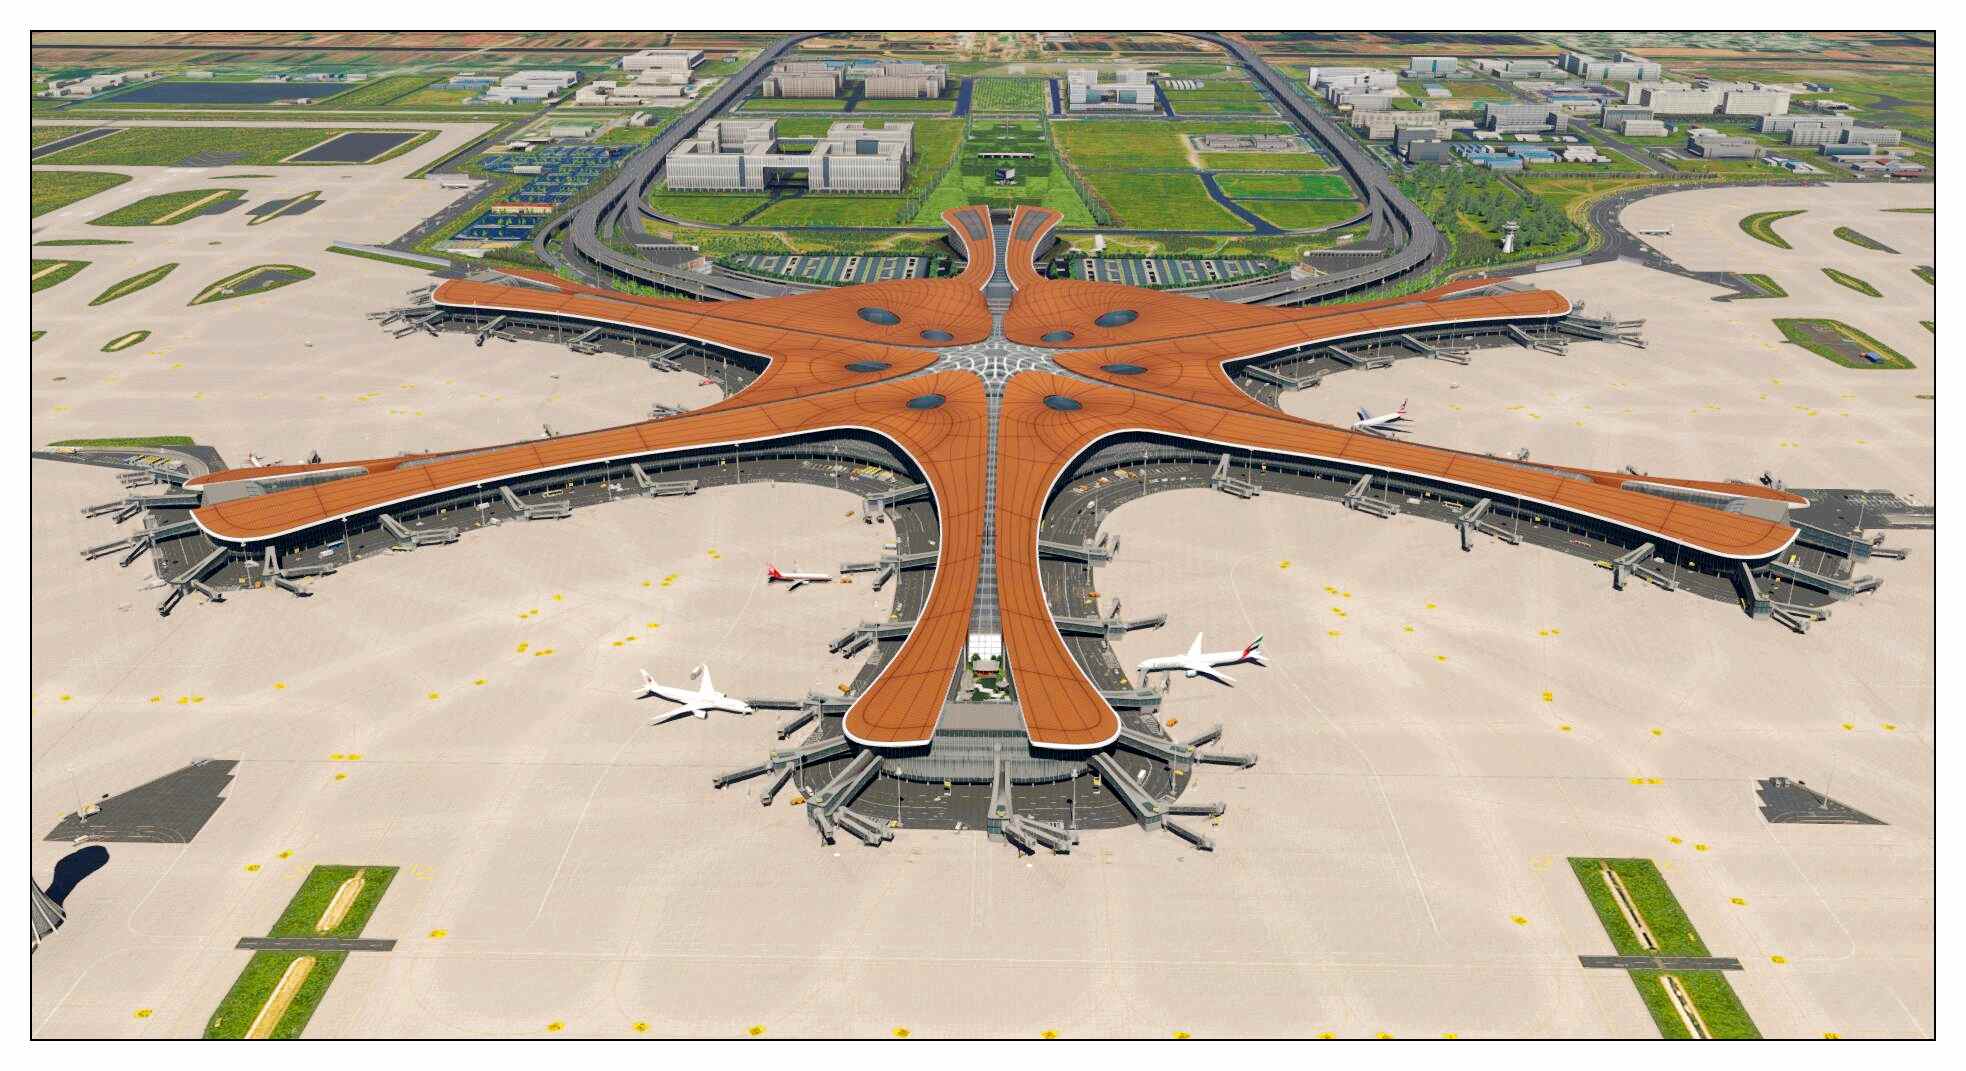 【X-Plane】ZBAD北京大兴国际机场-正式发布-6236 